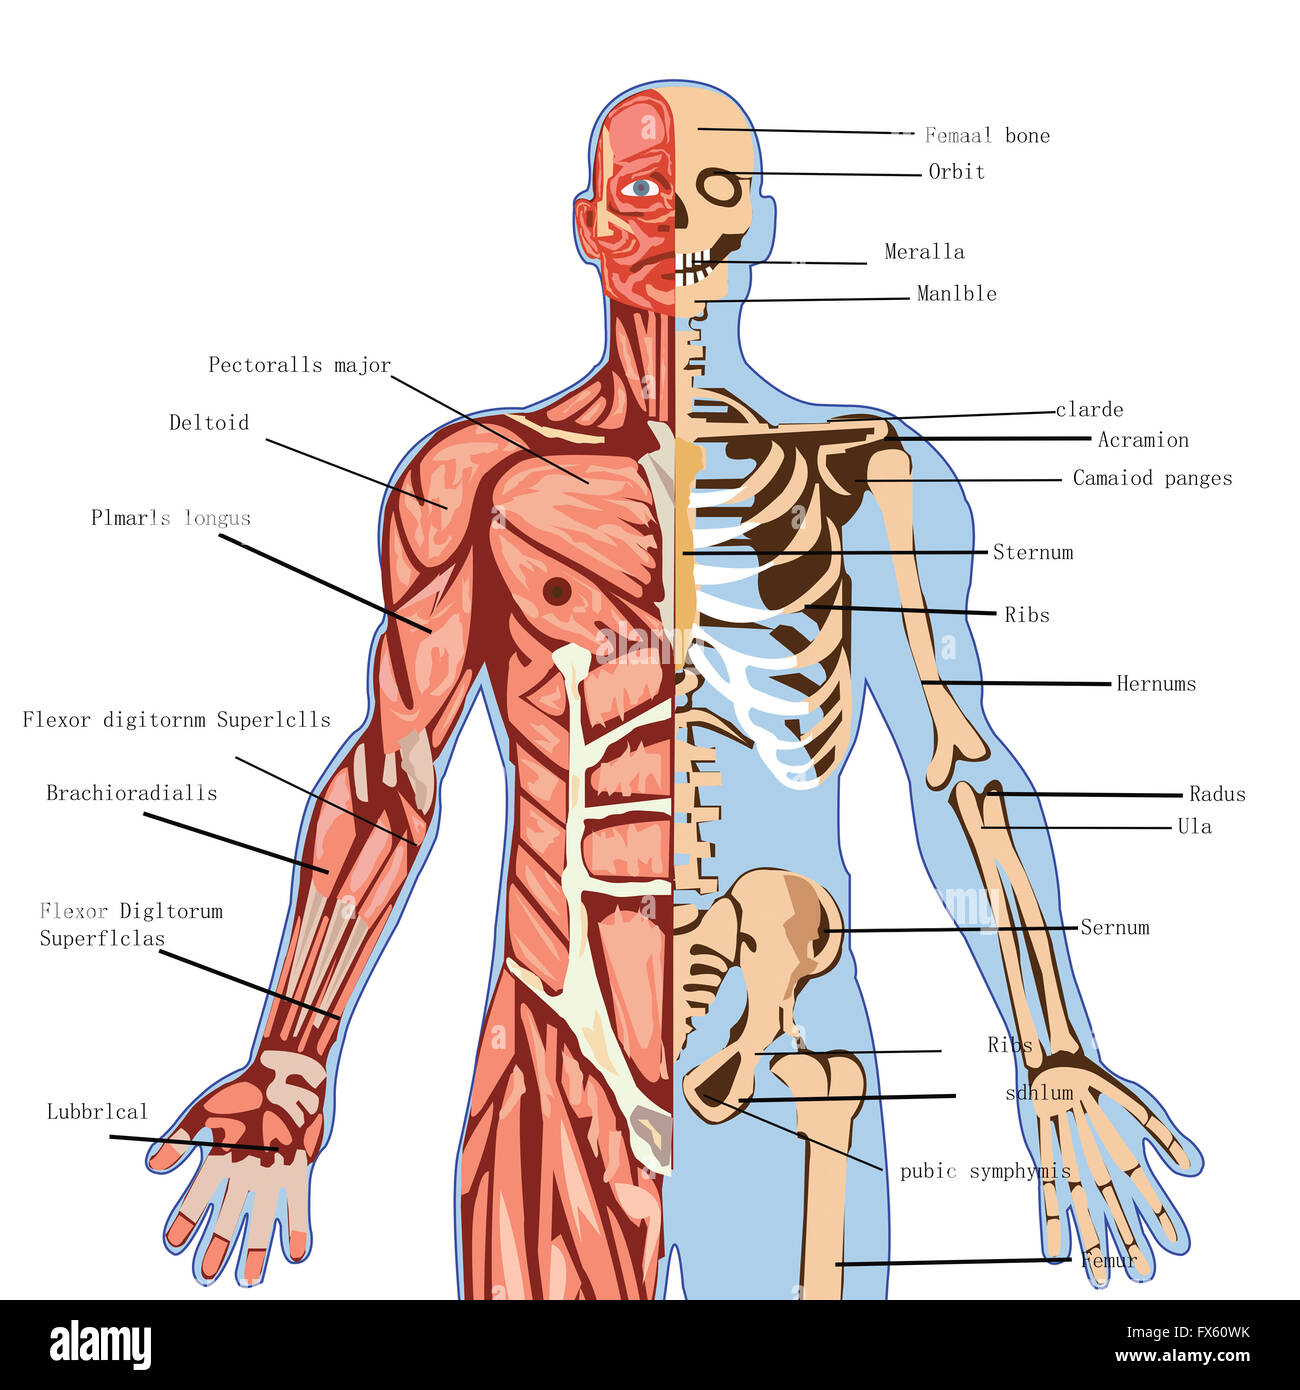 Il corpo umano, anatomia, medico, salute, illustrazione, medicina, scienze, Una infografica, biologia, sistema, cuore, l'uomo, maschio, cervello, Foto Stock